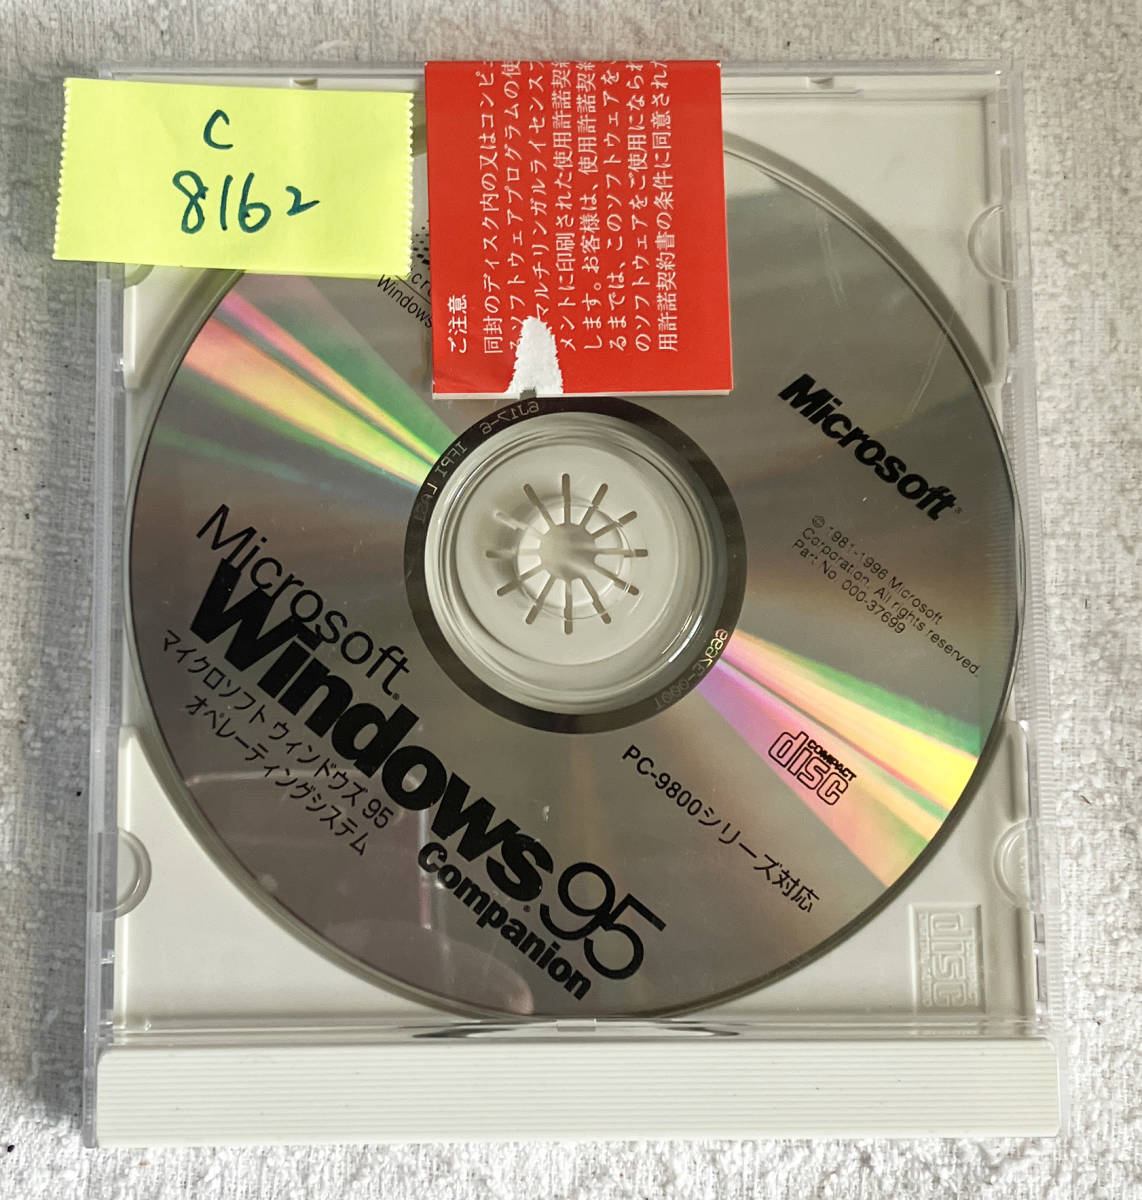 管C8162 Microsoft Windows95 マイクロソフト ウインドウズ95 オペレーティングシステム Companion PC-9800シリーズ対応_画像1